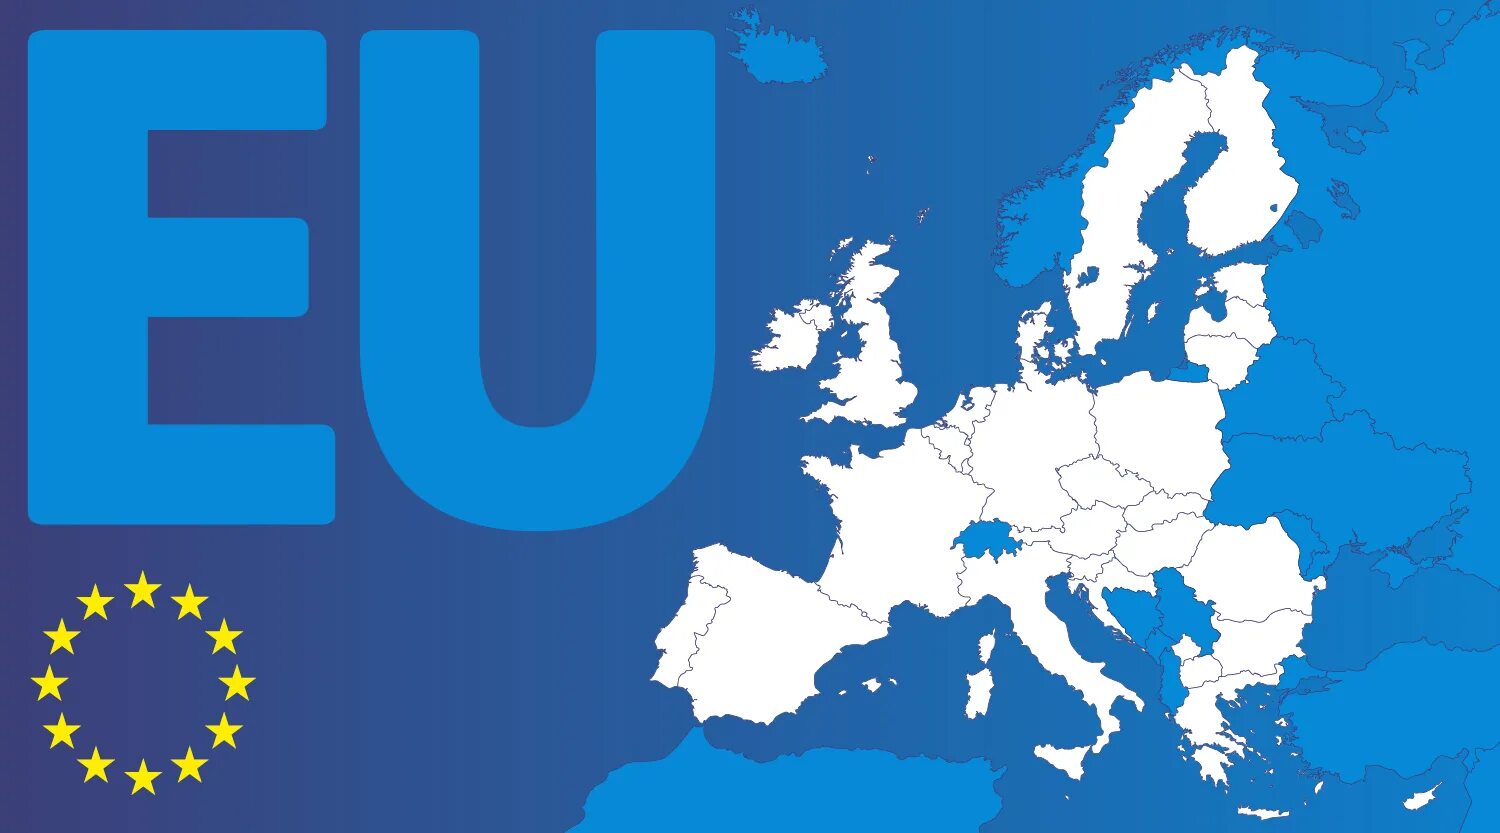 Eu g. Таможенный Союз европейского Союза. Европейский Союз таможенный Союз участники. Европейский Союз, ЕС, eu. Европейский Союз карта.